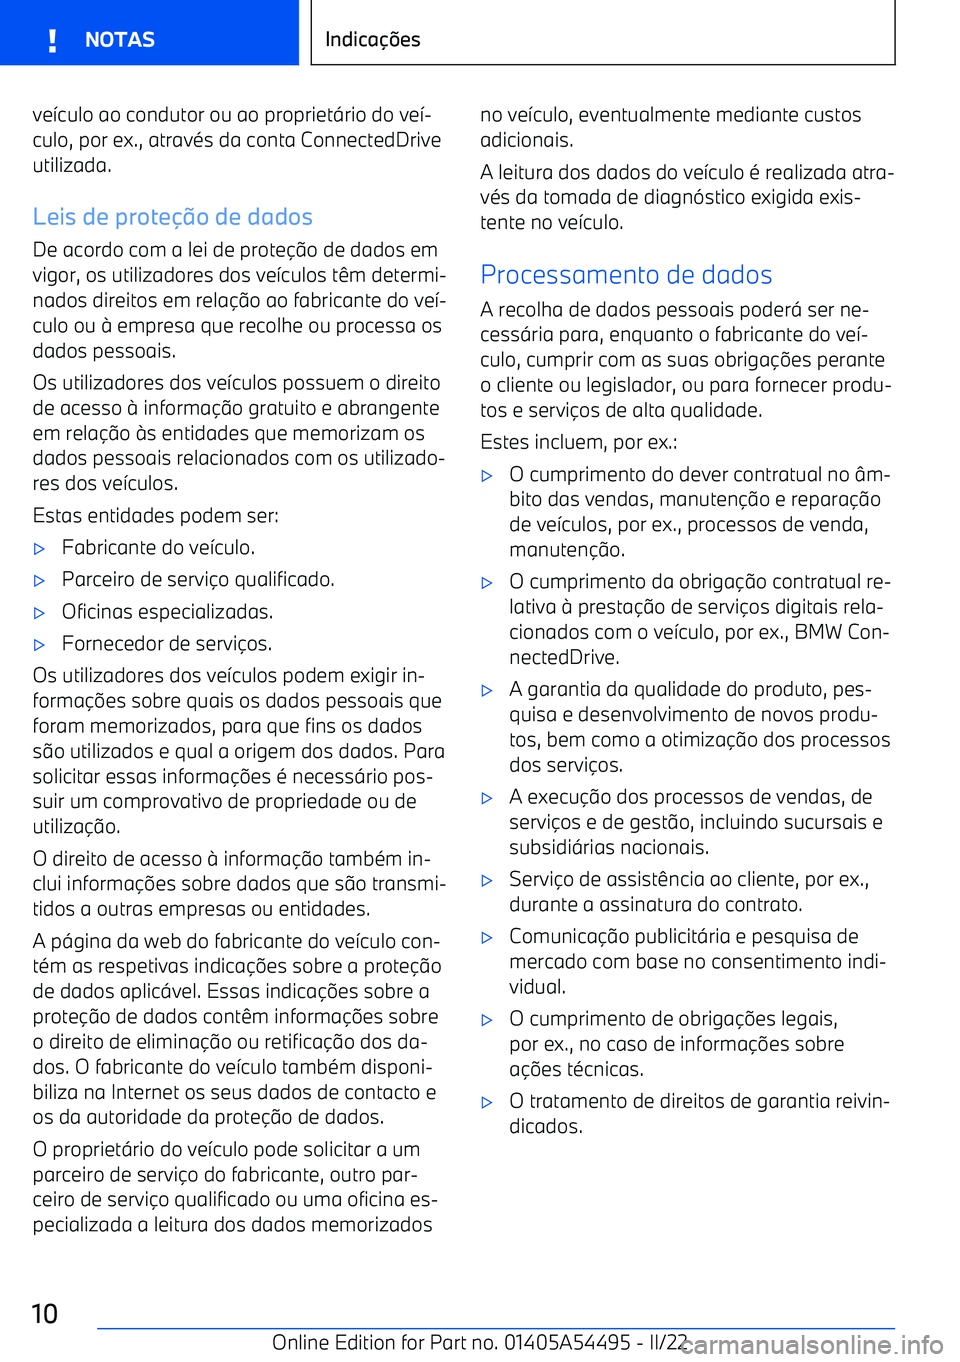 BMW IX 2022  Manual do condutor (in Portuguese) ve7culo ao condutor ou ao propriet <rio do ve 7